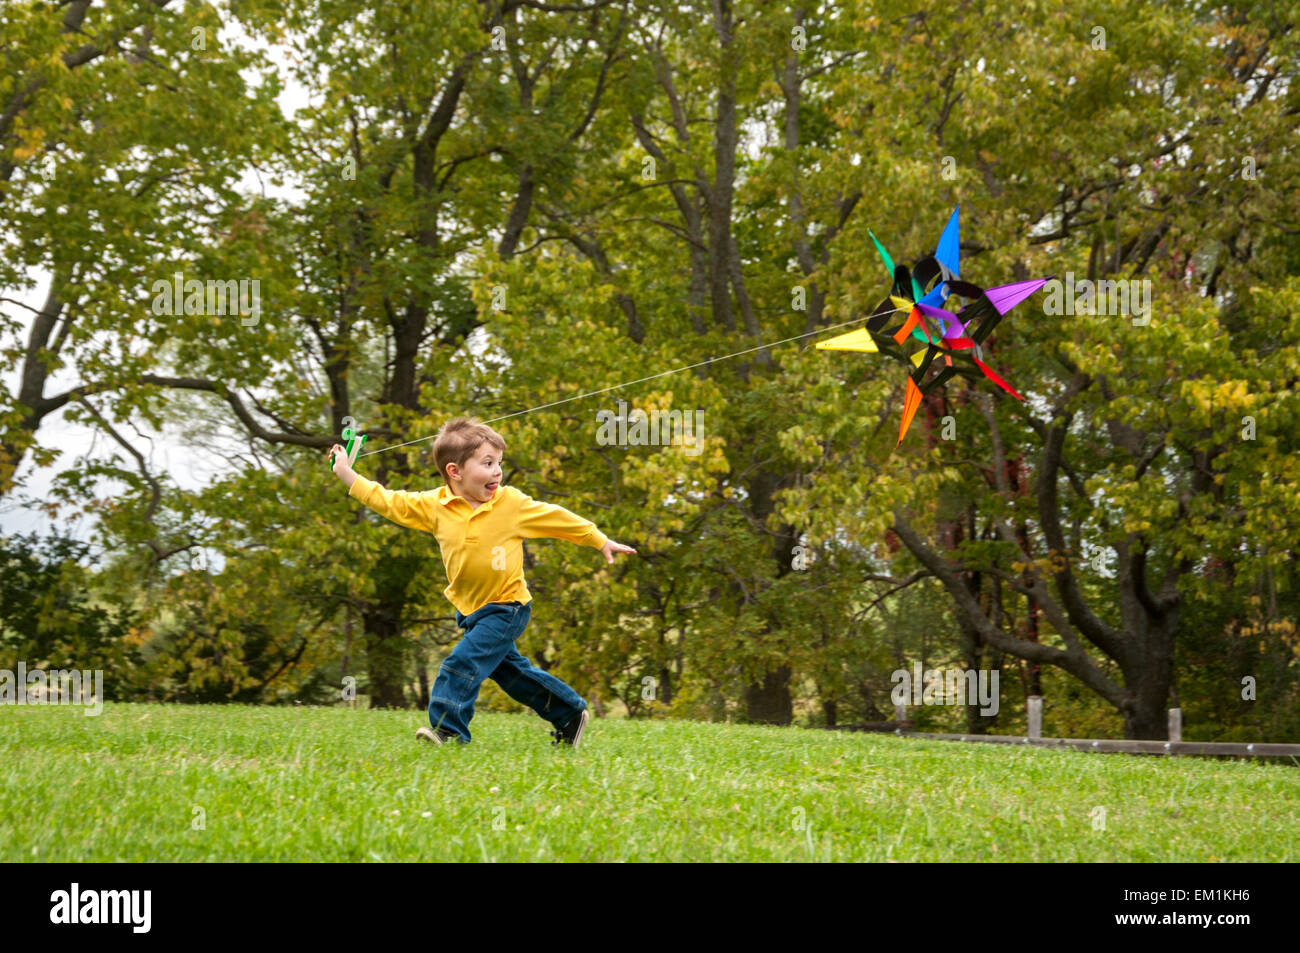 Boy running avec kite Banque D'Images